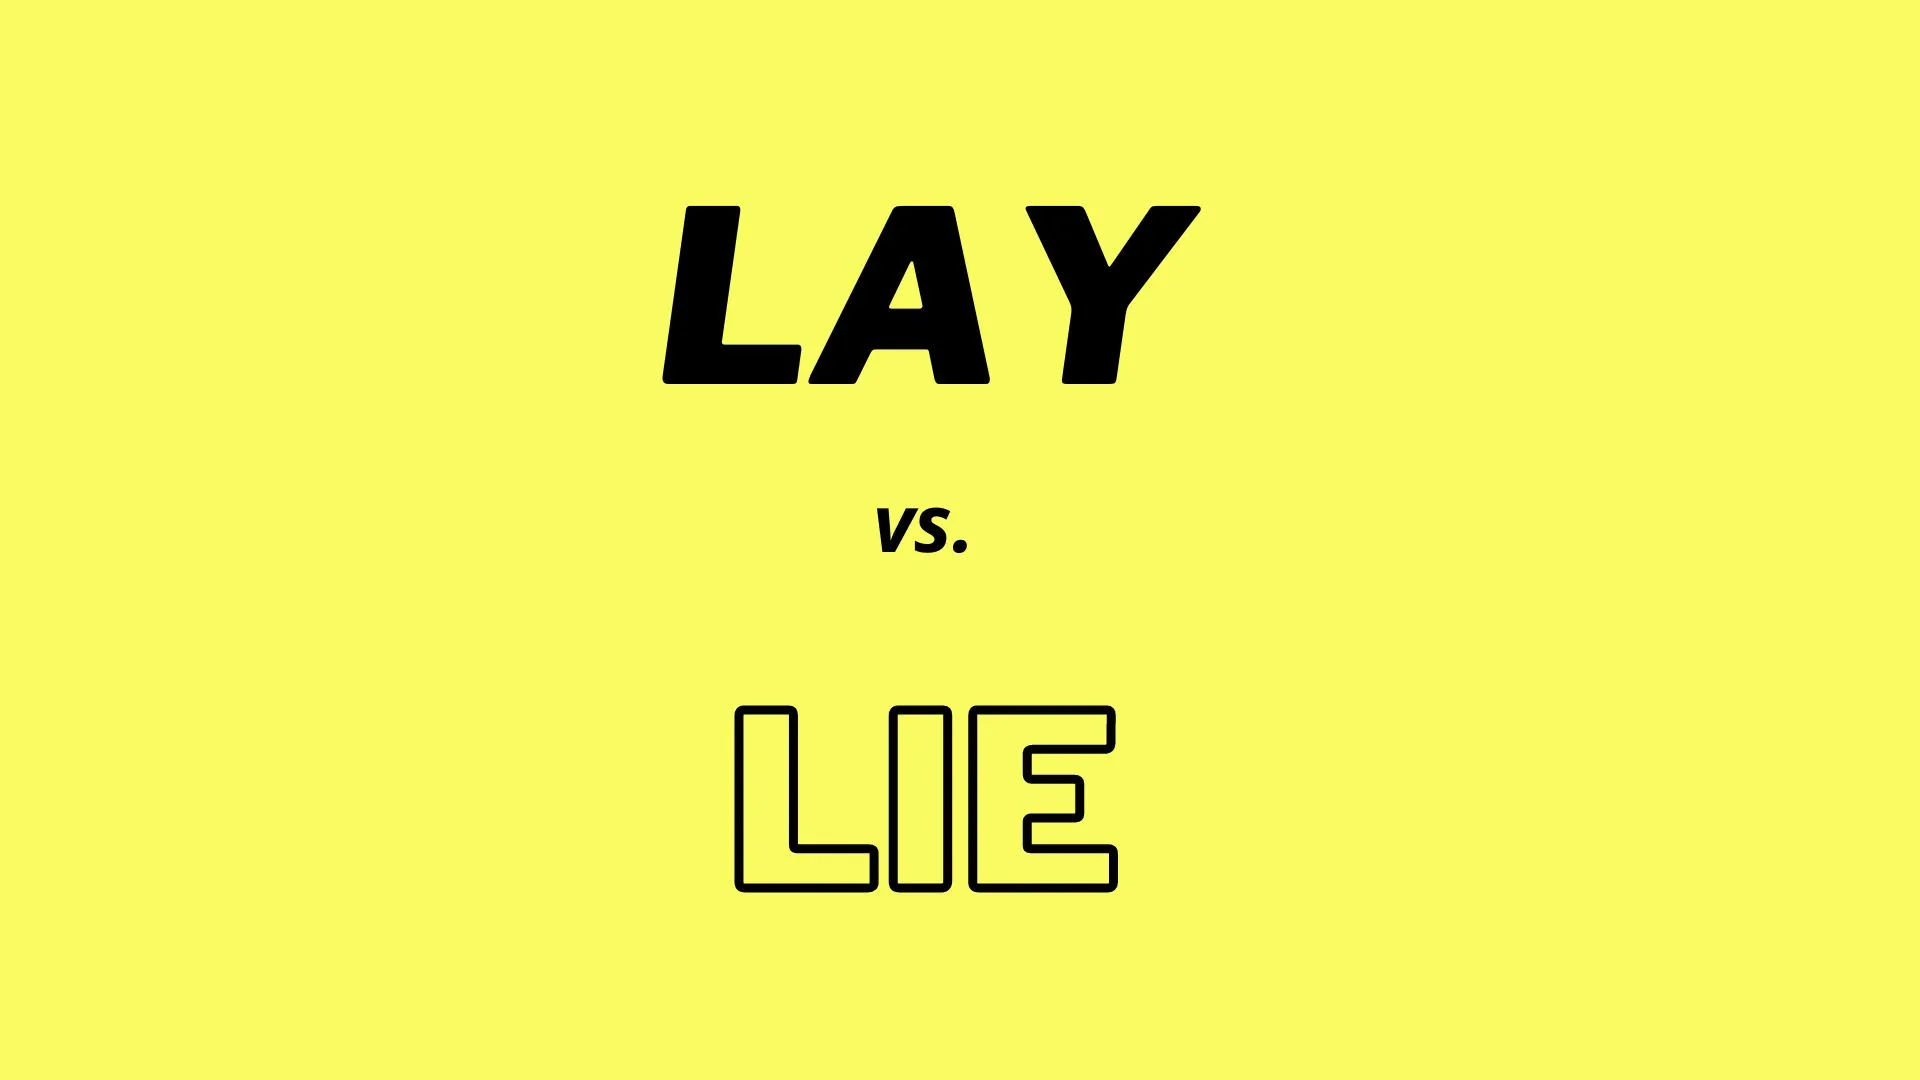 Wizualne porównanie i definicje słów "lay" i "lie".